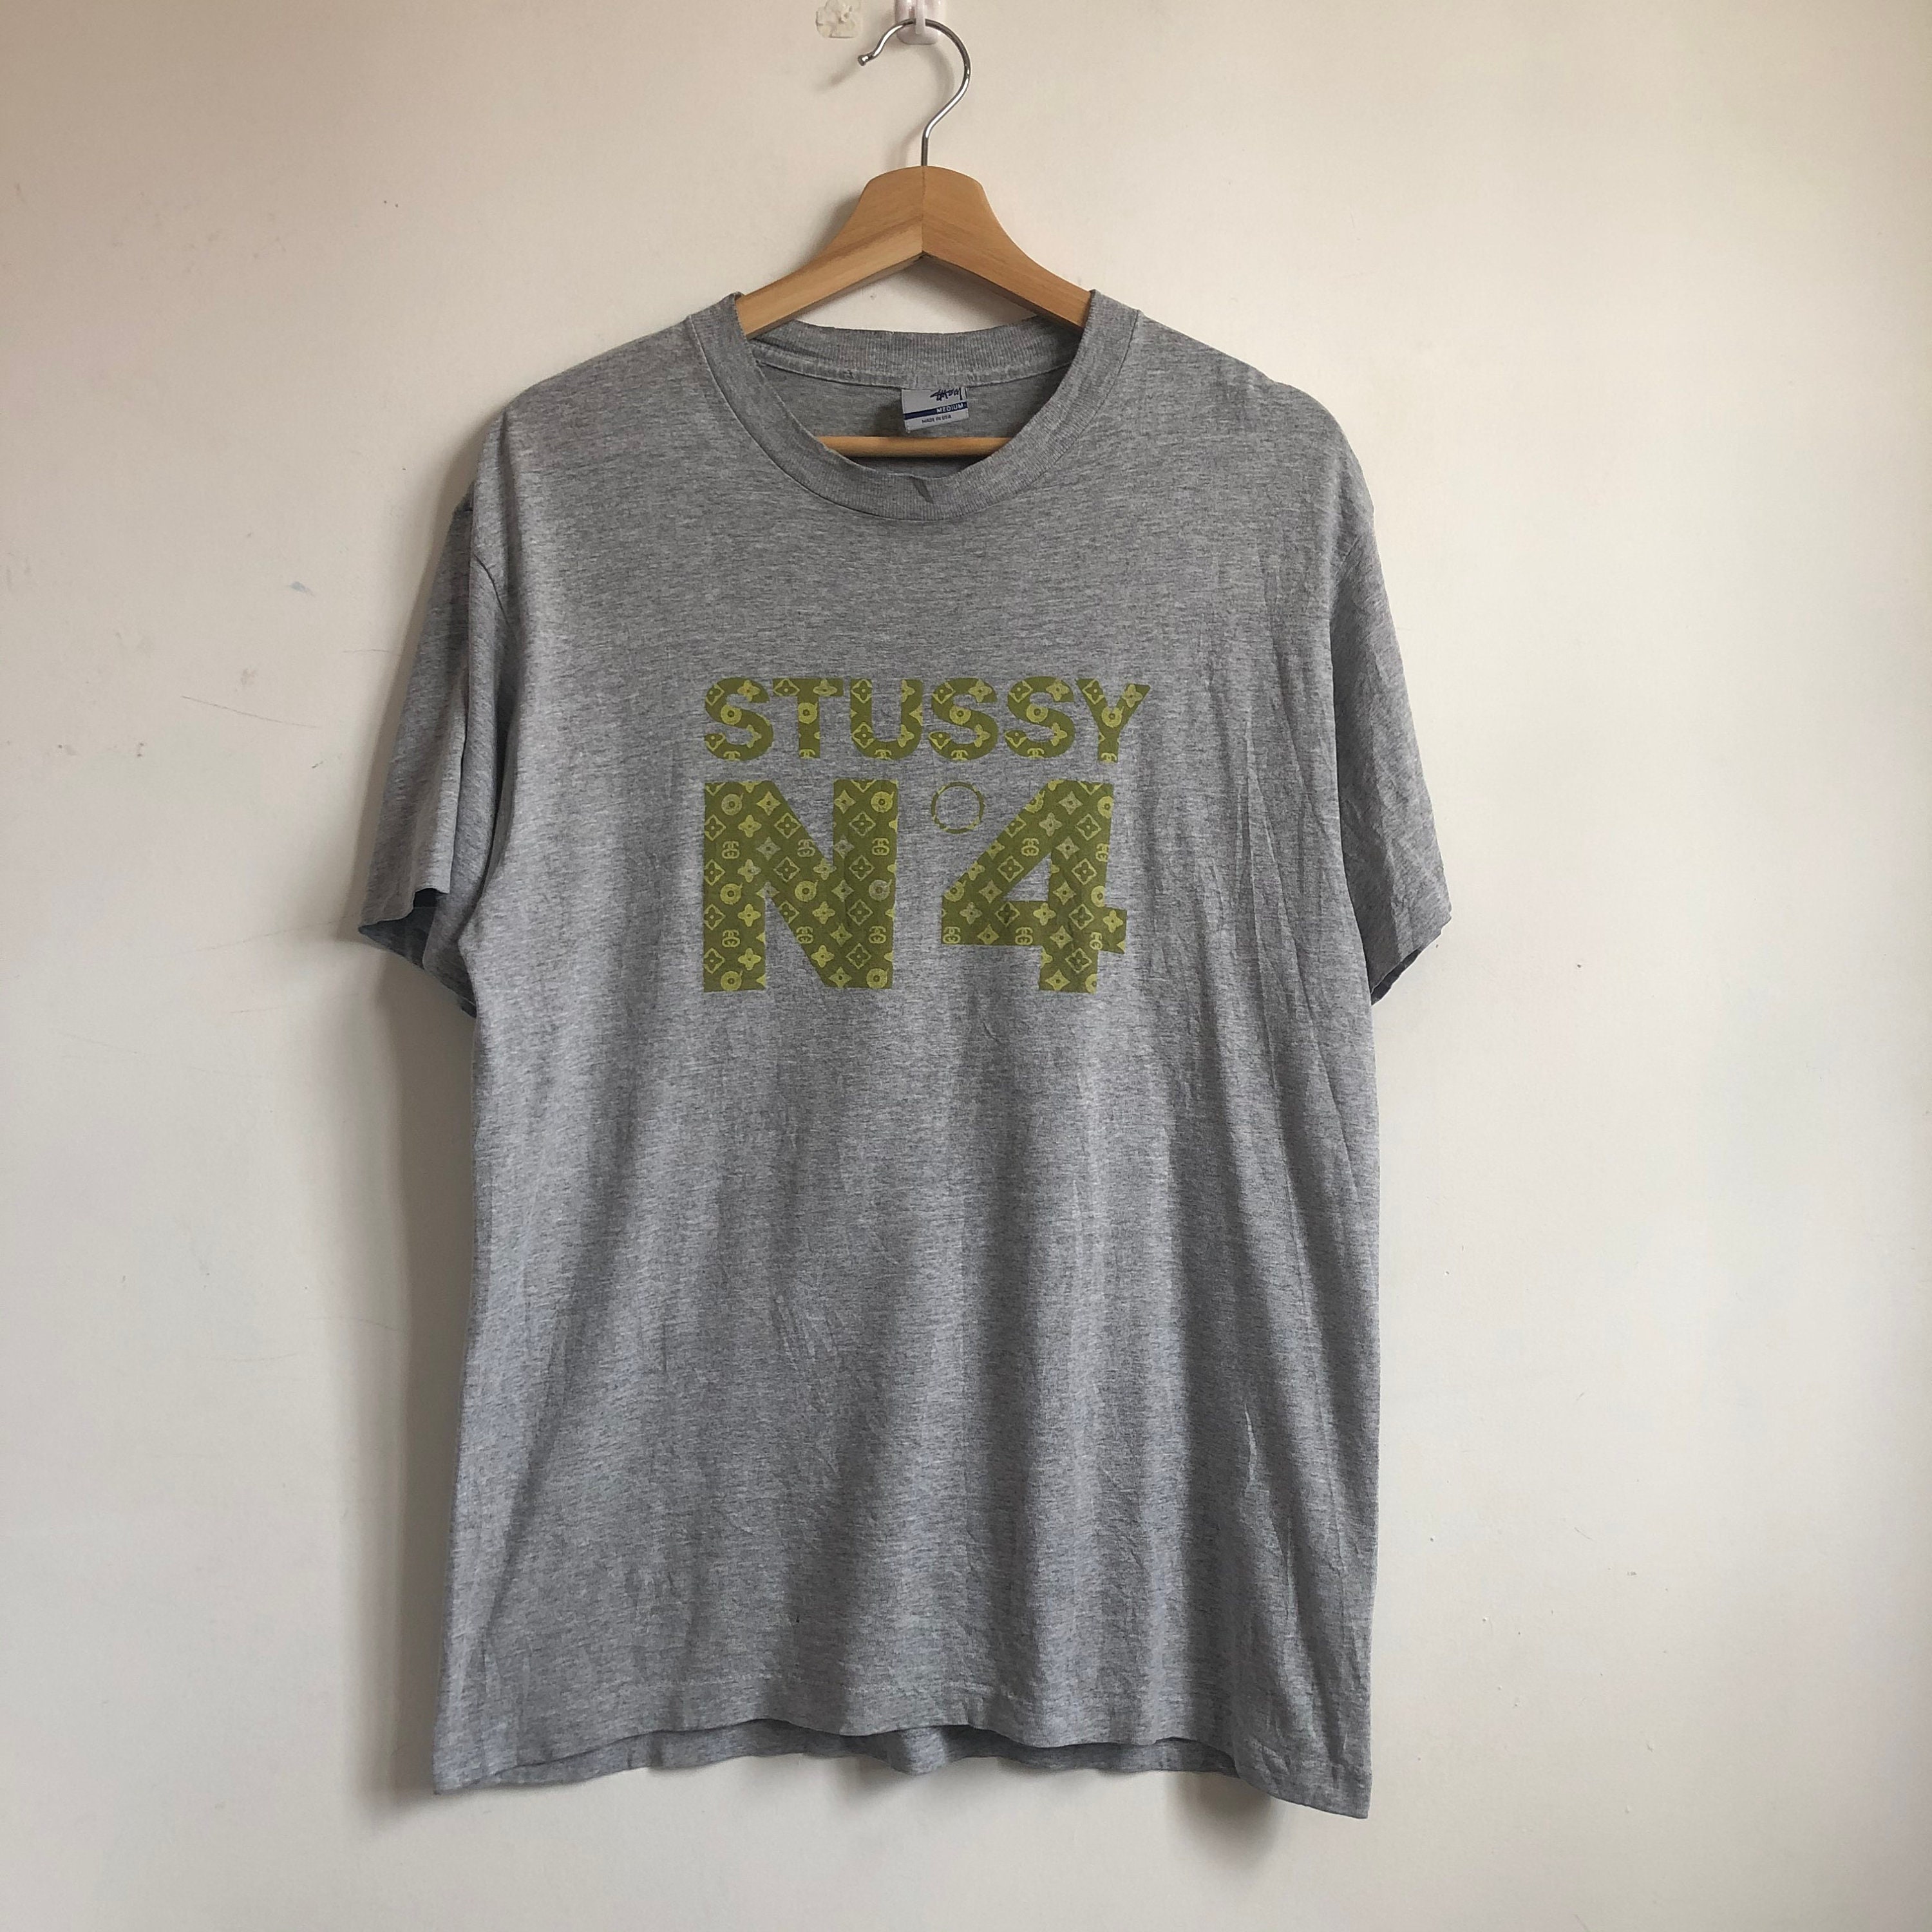 Vintage Stussy No 4 Shirt / Stussy Monogram / 90s Streetwear - Etsy Ireland